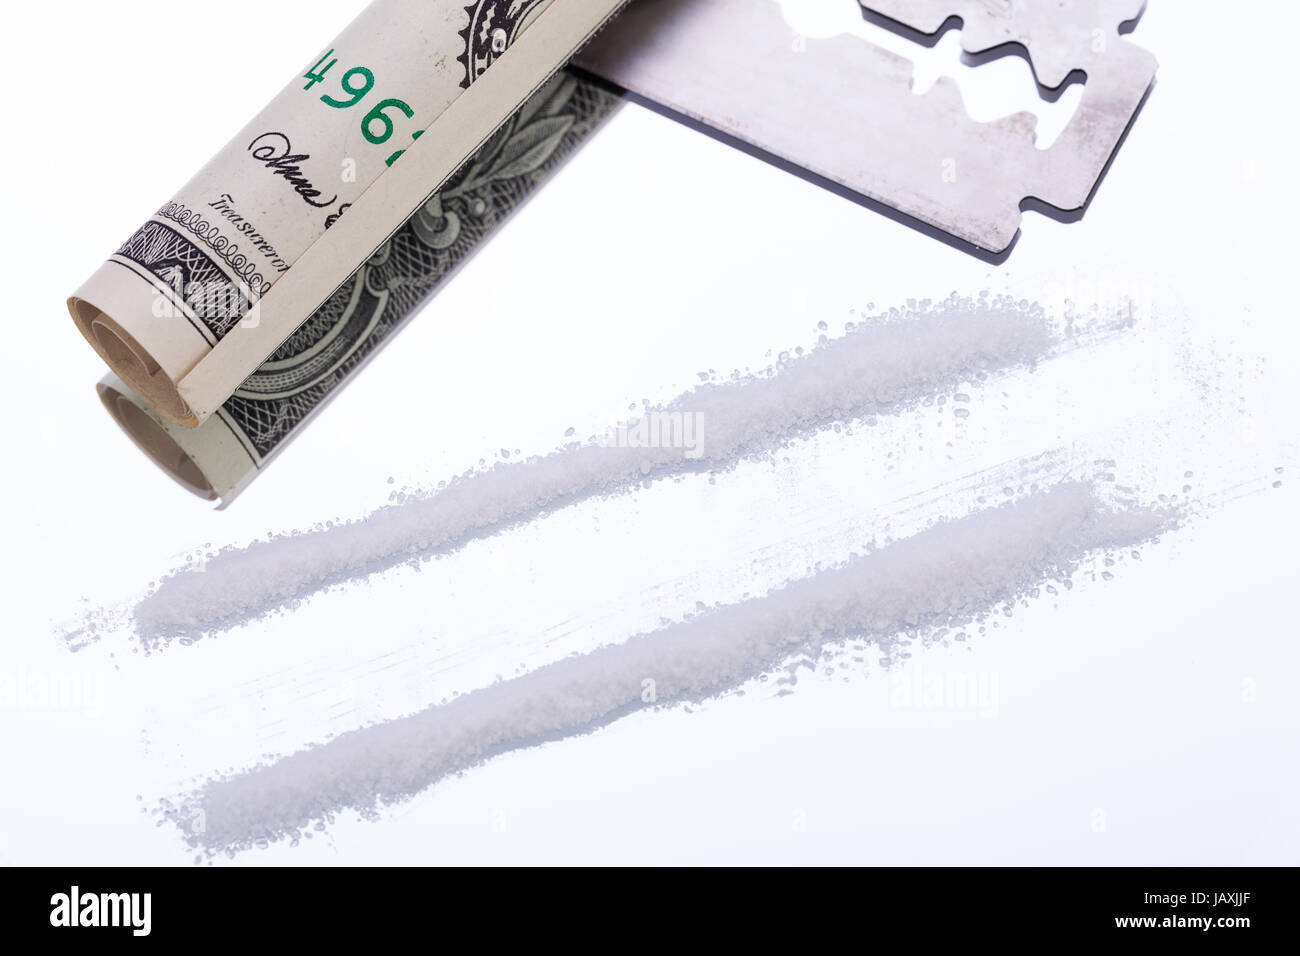 drogen mit geldschein und rasierklinge auf spiegel kokain illegal sucht  abhängig Stock Photo - Alamy